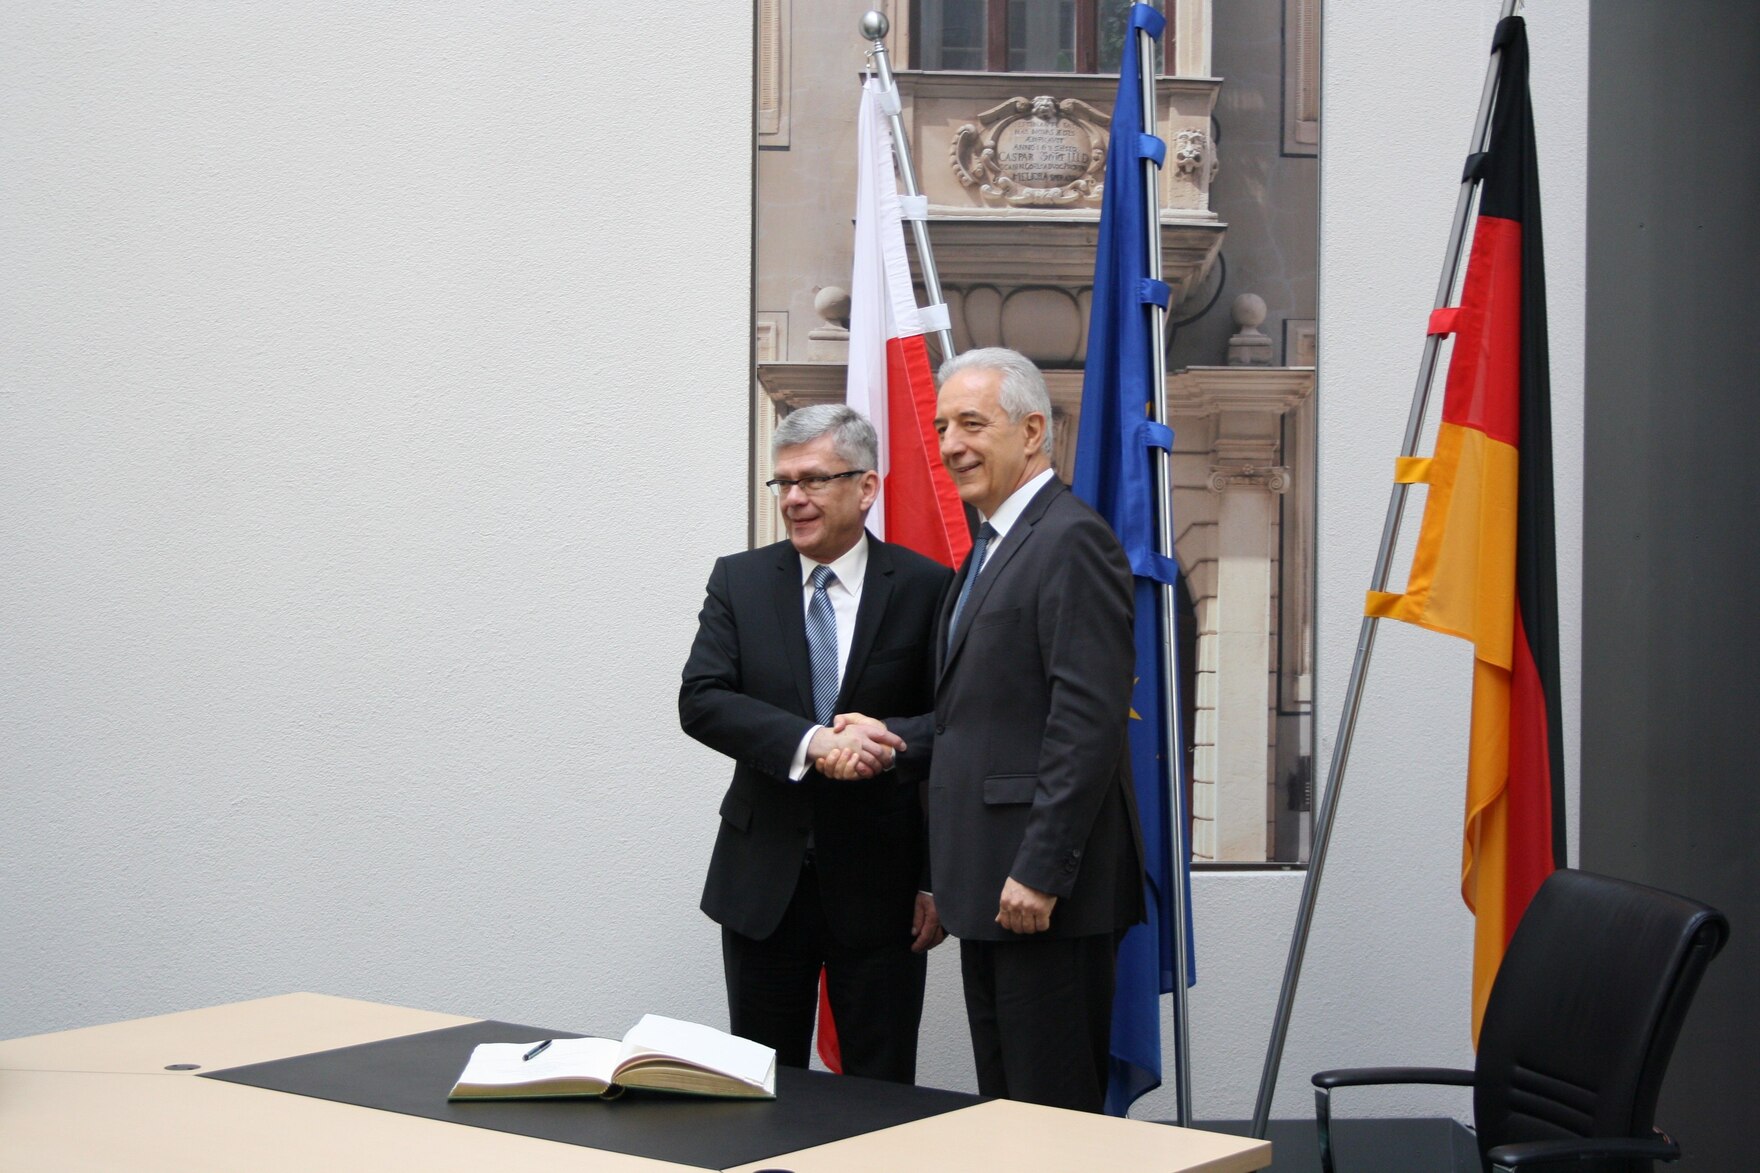 Bundesratspräsident Stanislaw Tillich (r.) empfing den polnischen Senatsmarschall Stanisław Karczewski (l.) zu einem offiziellen Besuch in Dresden und Berlin. 